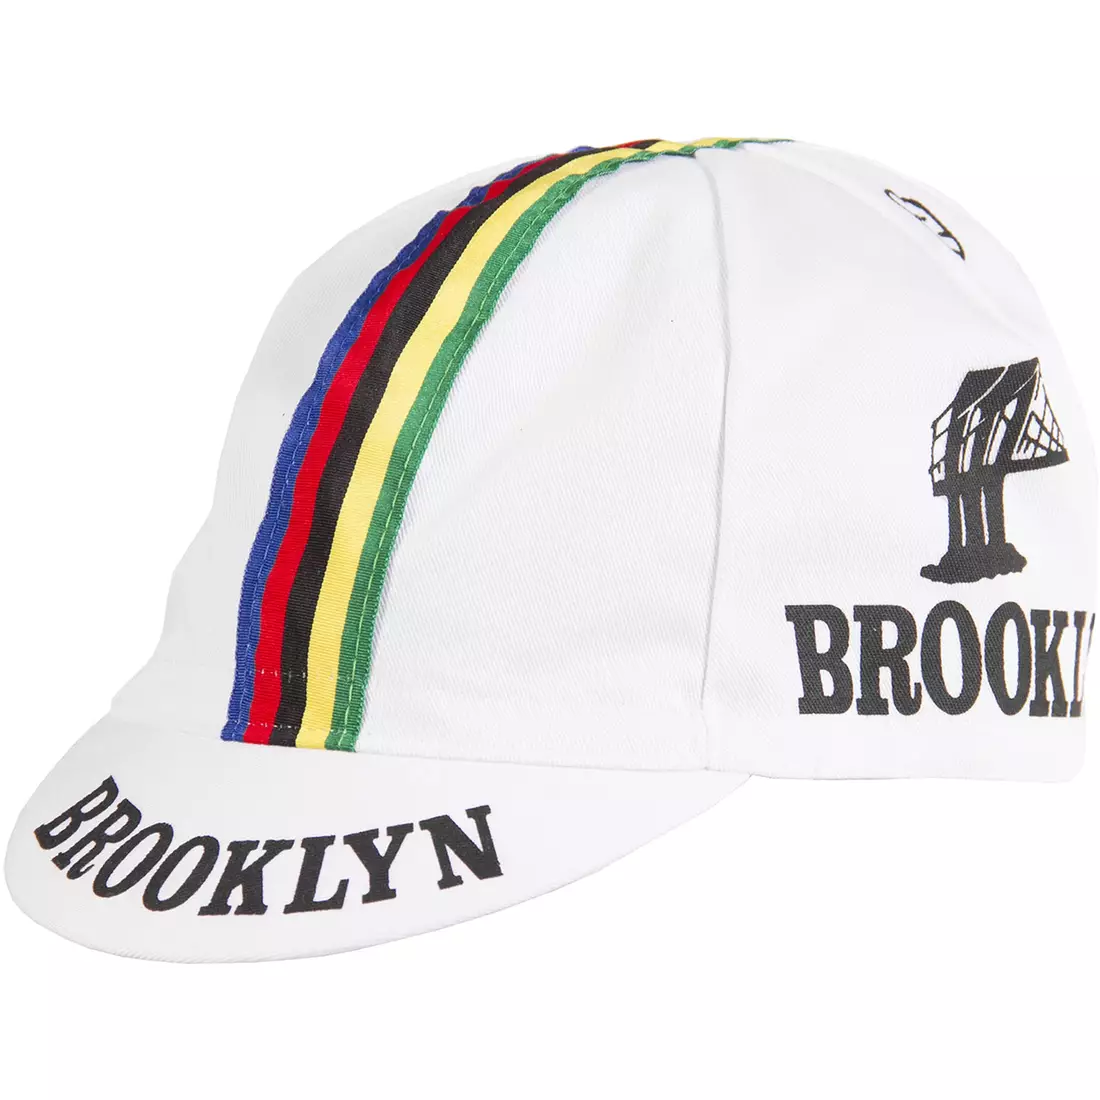 Cyklistická čiapka GIORDANA SS18 - Brooklyn - biela s pásikovou páskou GI-S6-COCA-BROK-WHIT jedna veľ.